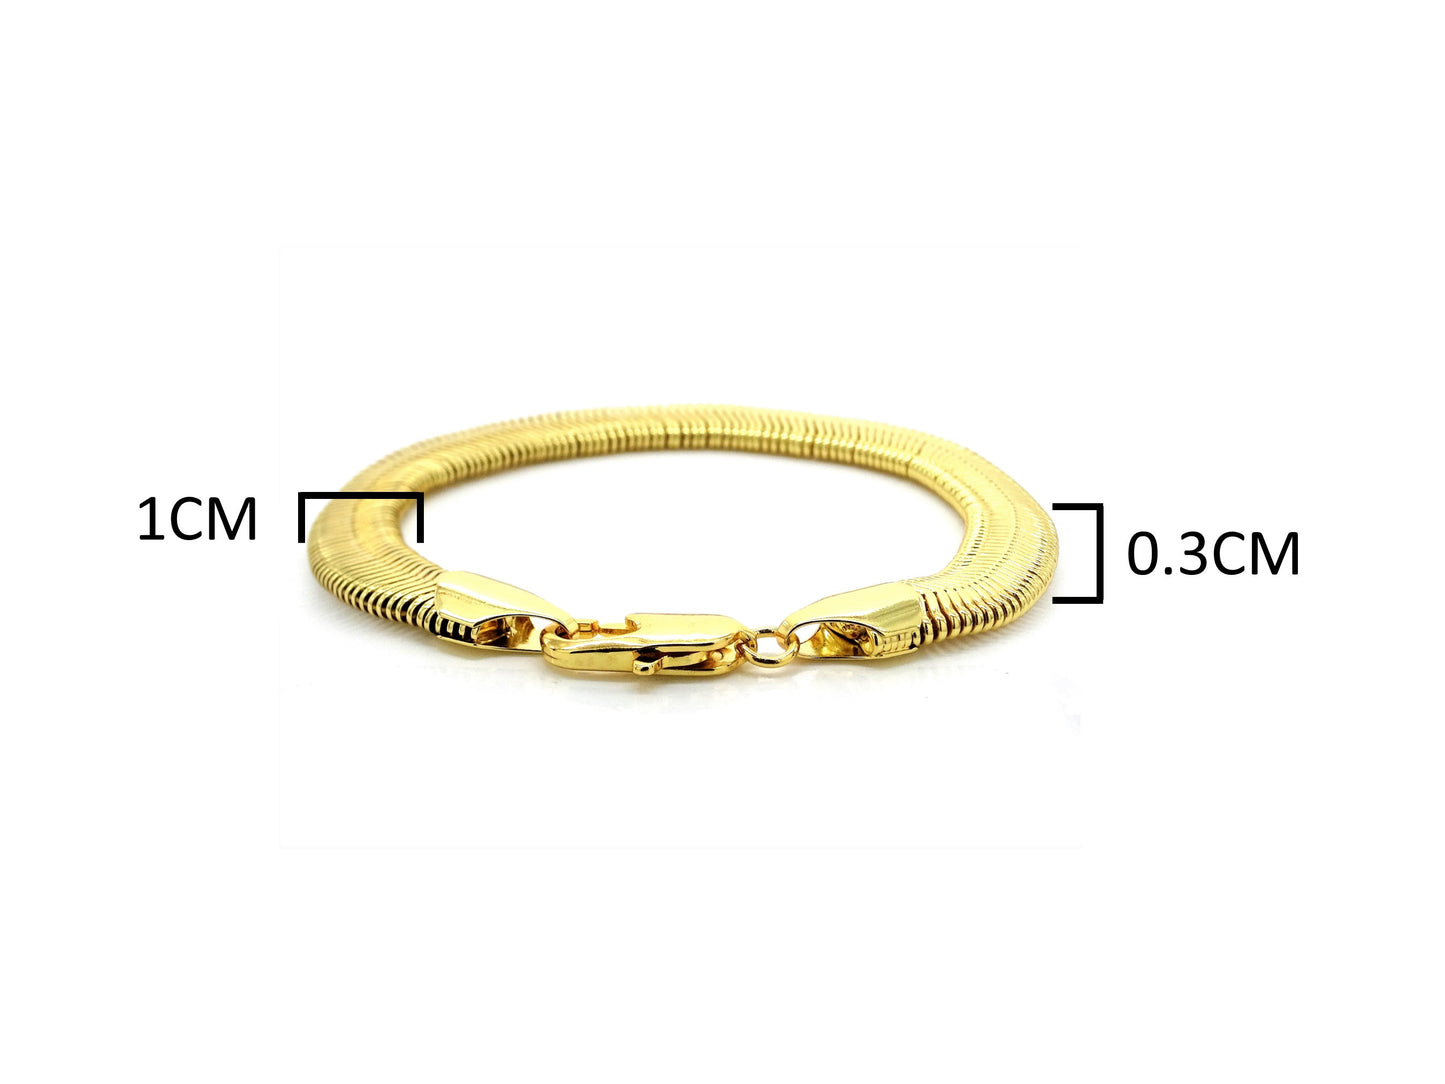 Gold snake chain bracelet MEASUREMENT